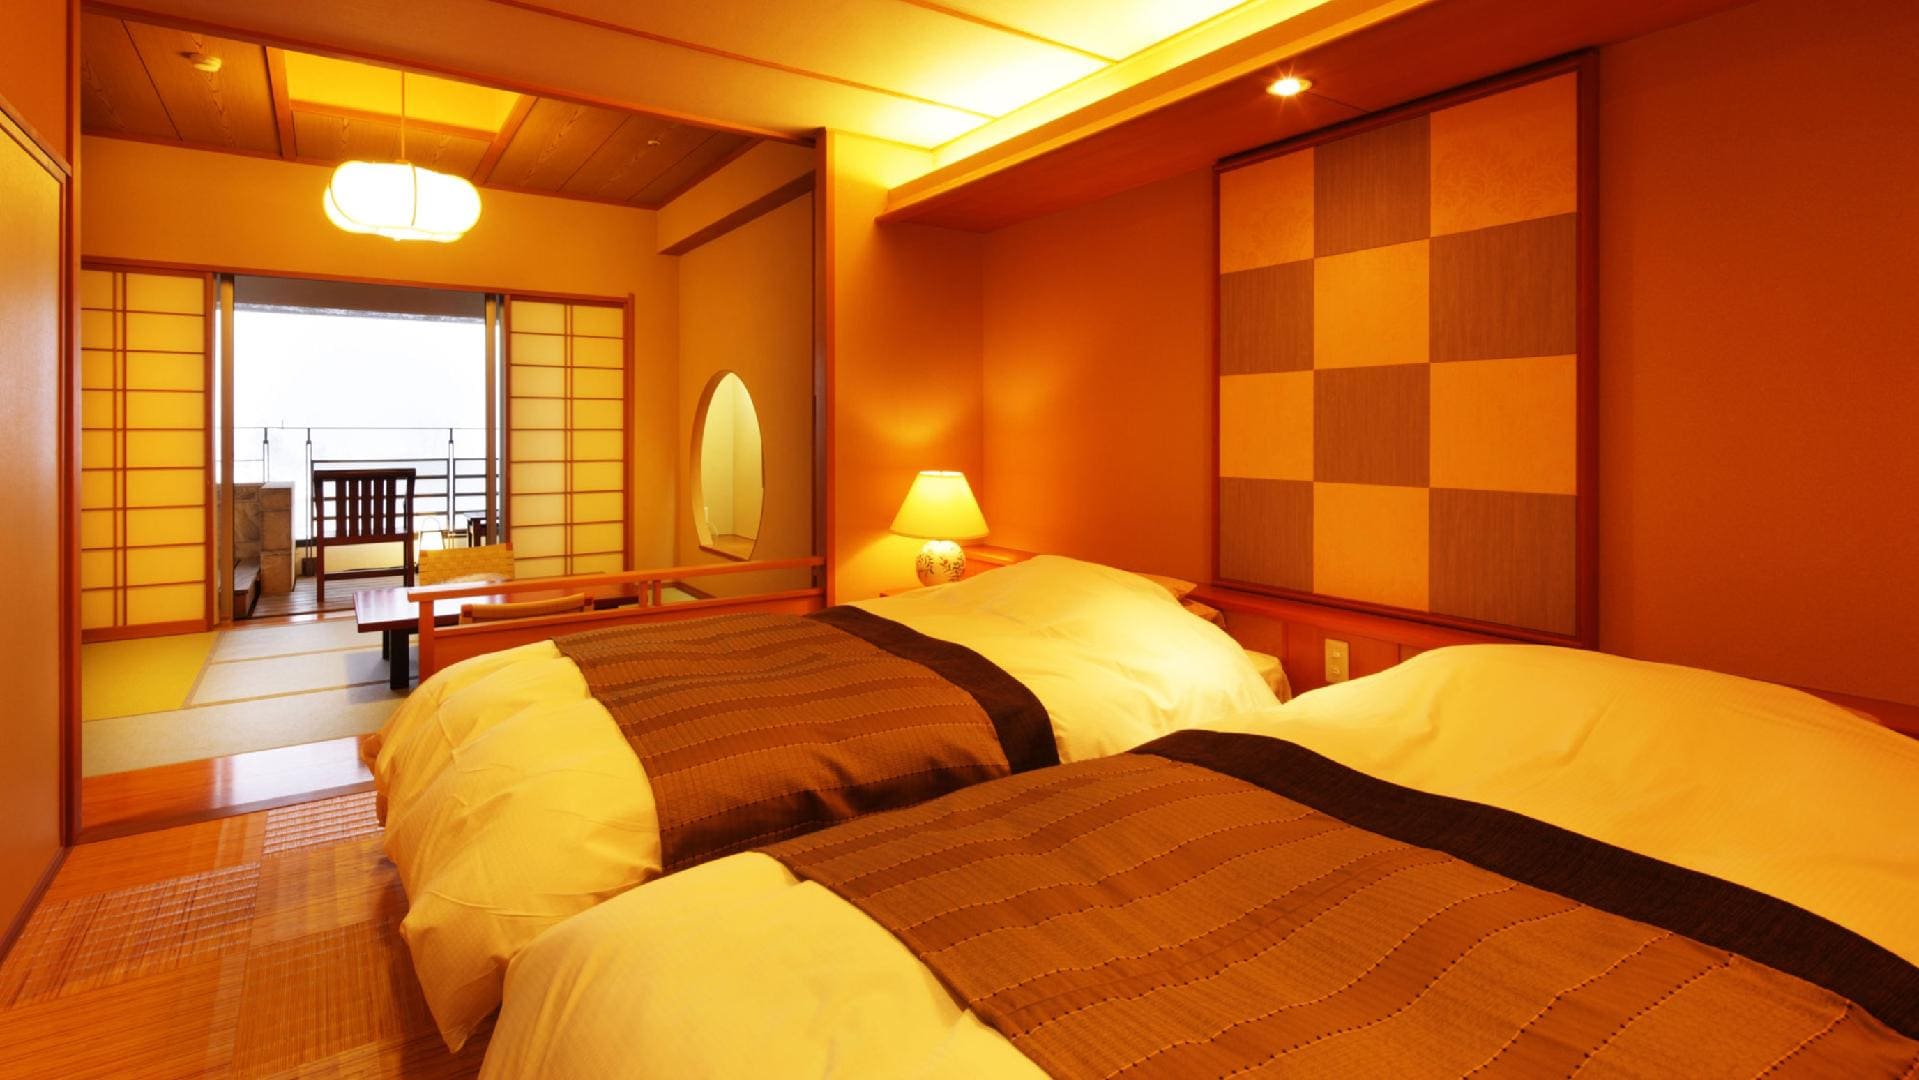  ห้องพักพร้อมอ่างอาบน้ำกลางแจ้งแบบญี่ปุ่นและตะวันตก